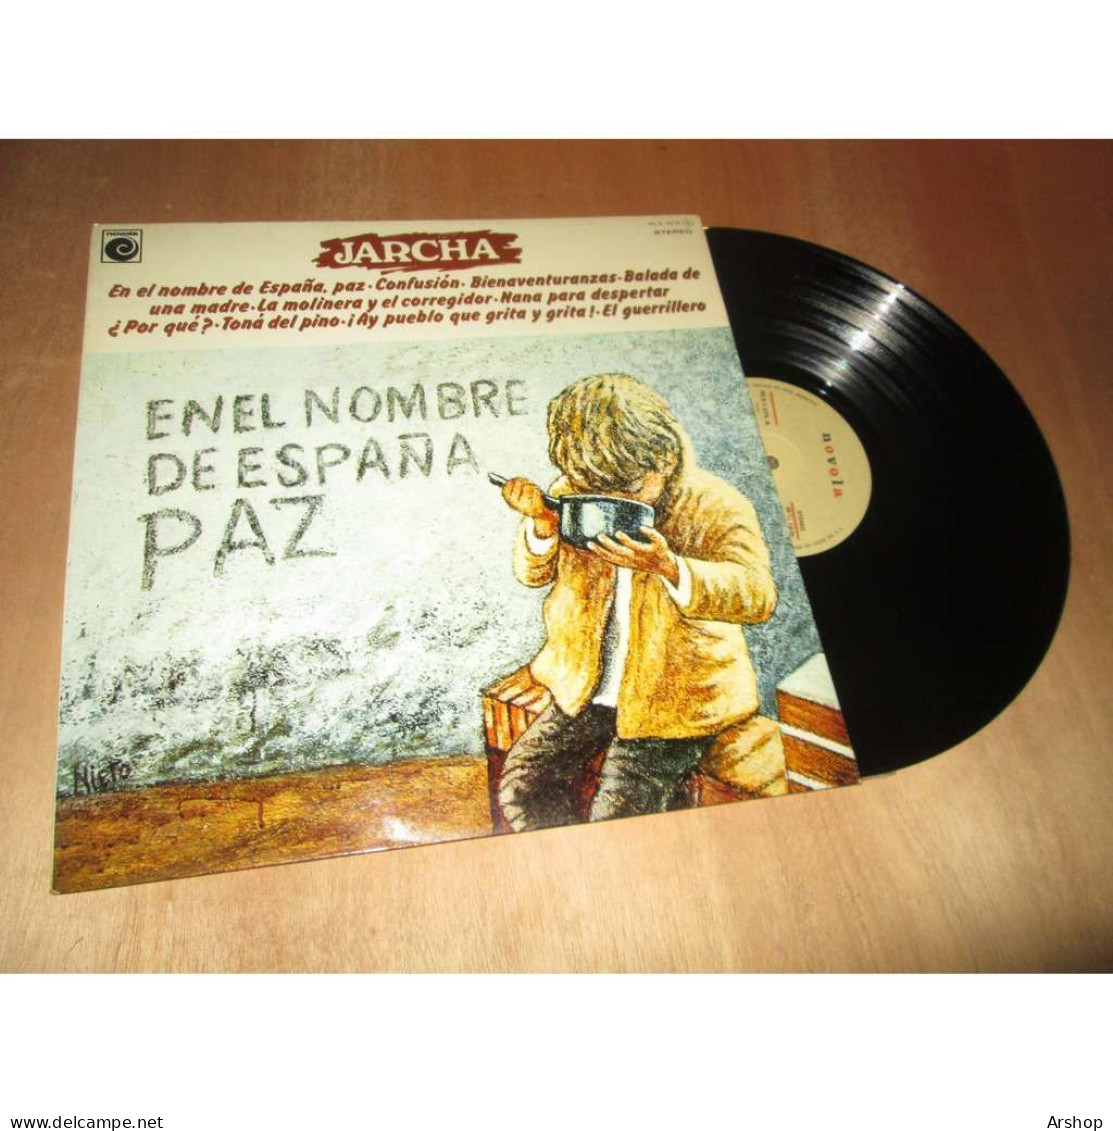 JARCHA En El Nombre De Espana Paz FOLK ESPAGNE - NOVOLA NLX 1074 Lp 1977 - Other - Spanish Music